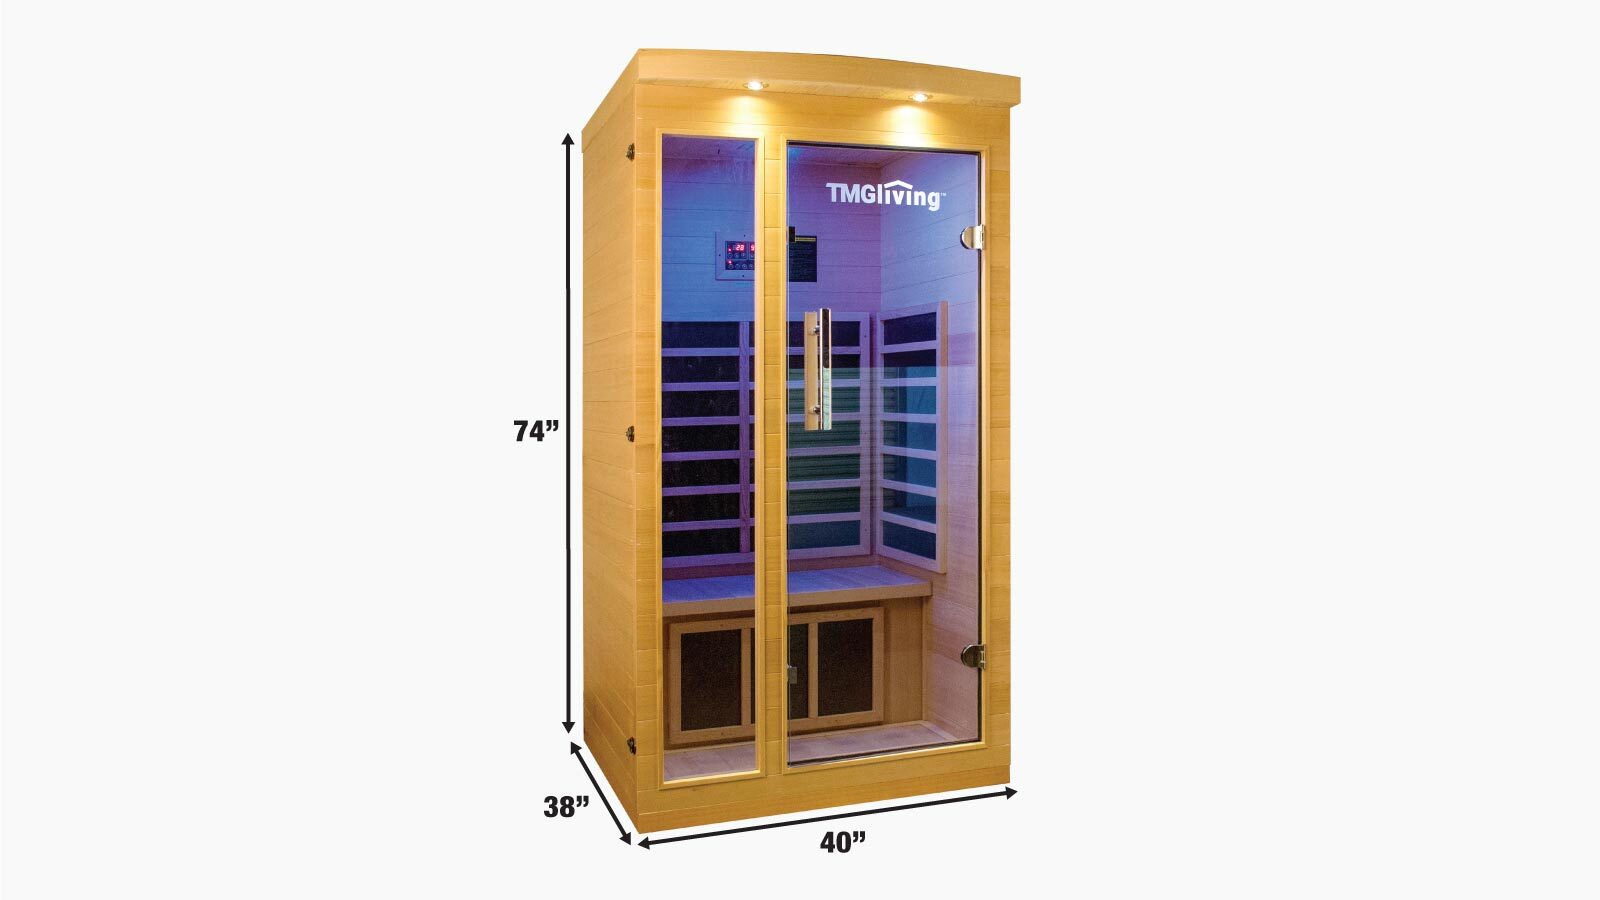 TMG LIVING 1-2 Person Indoor Infrared Sauna Room, Natural Canadian Hemlock, Bluetooth Speakers, Tempered Glass Door, TMG-LSN10-specifications-image